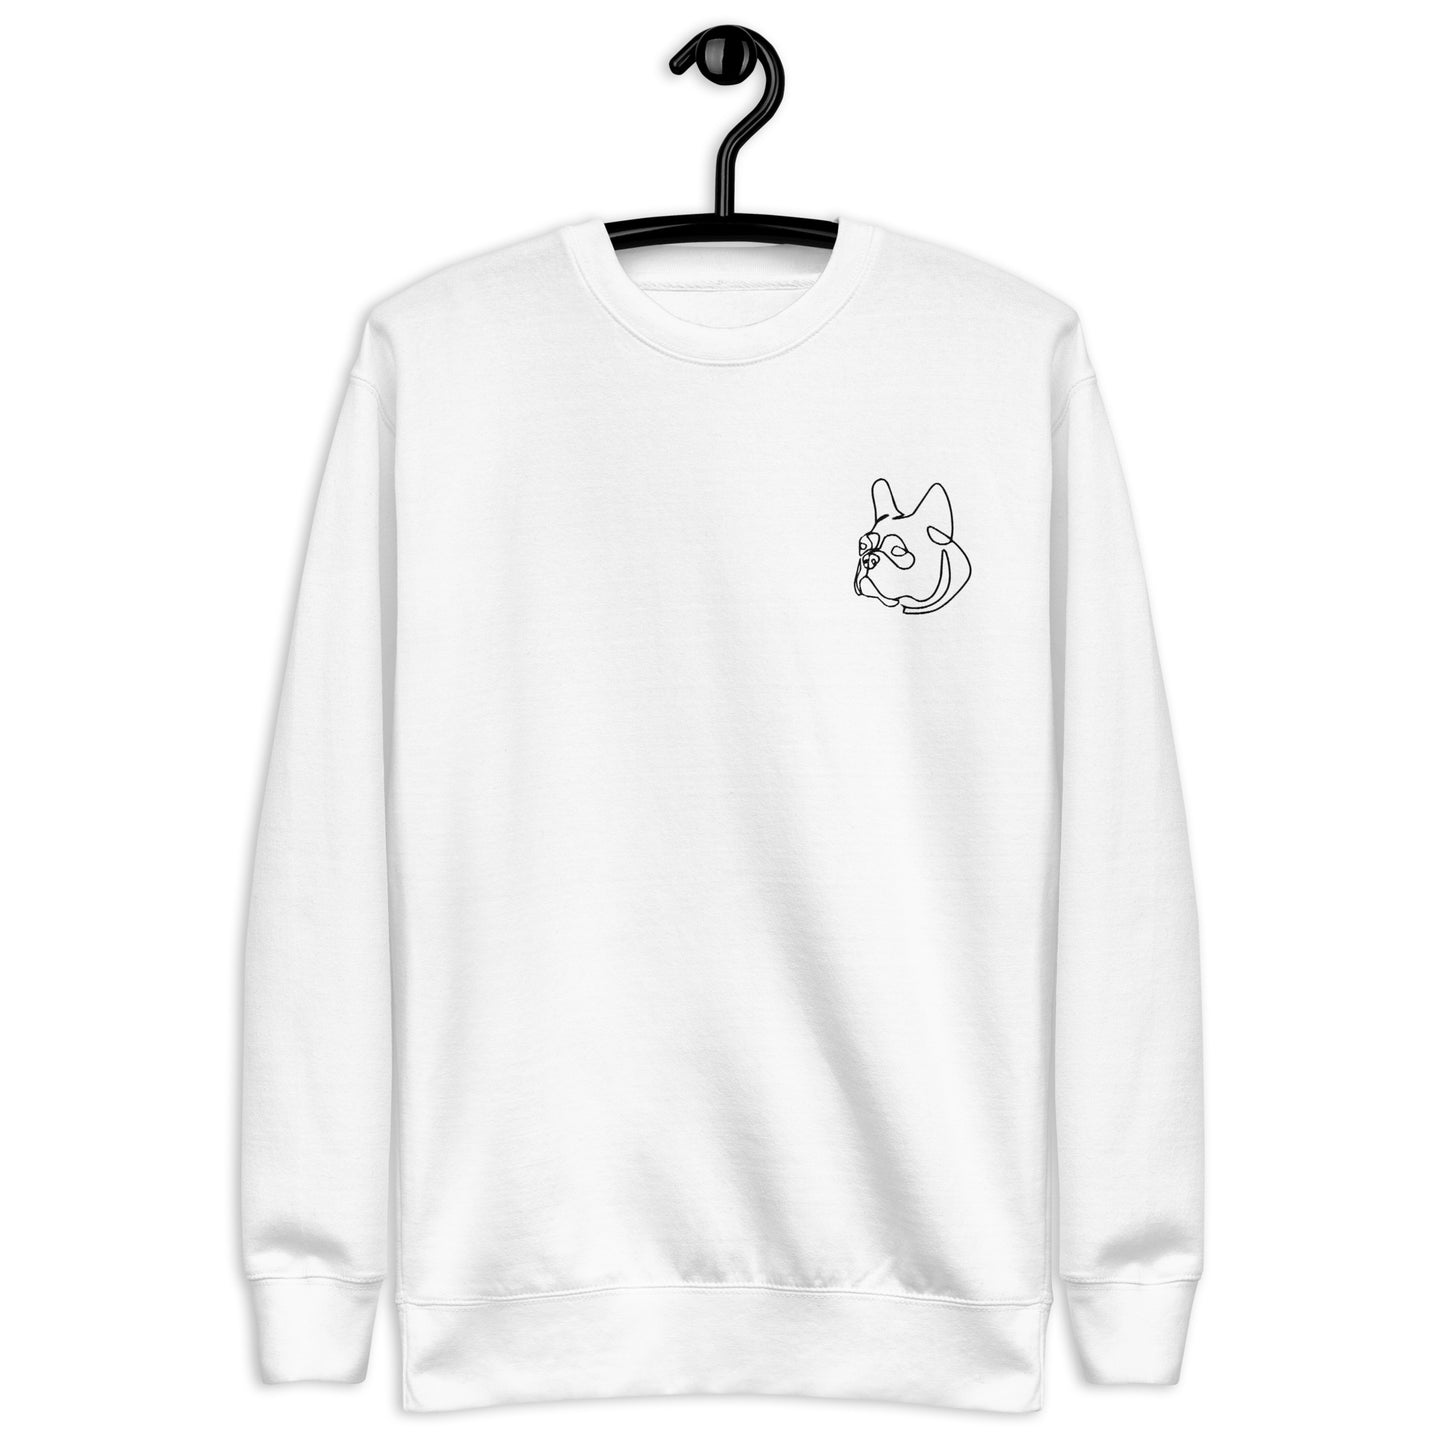 French Bull Dog Embroidered Unisex Sweatshirt White